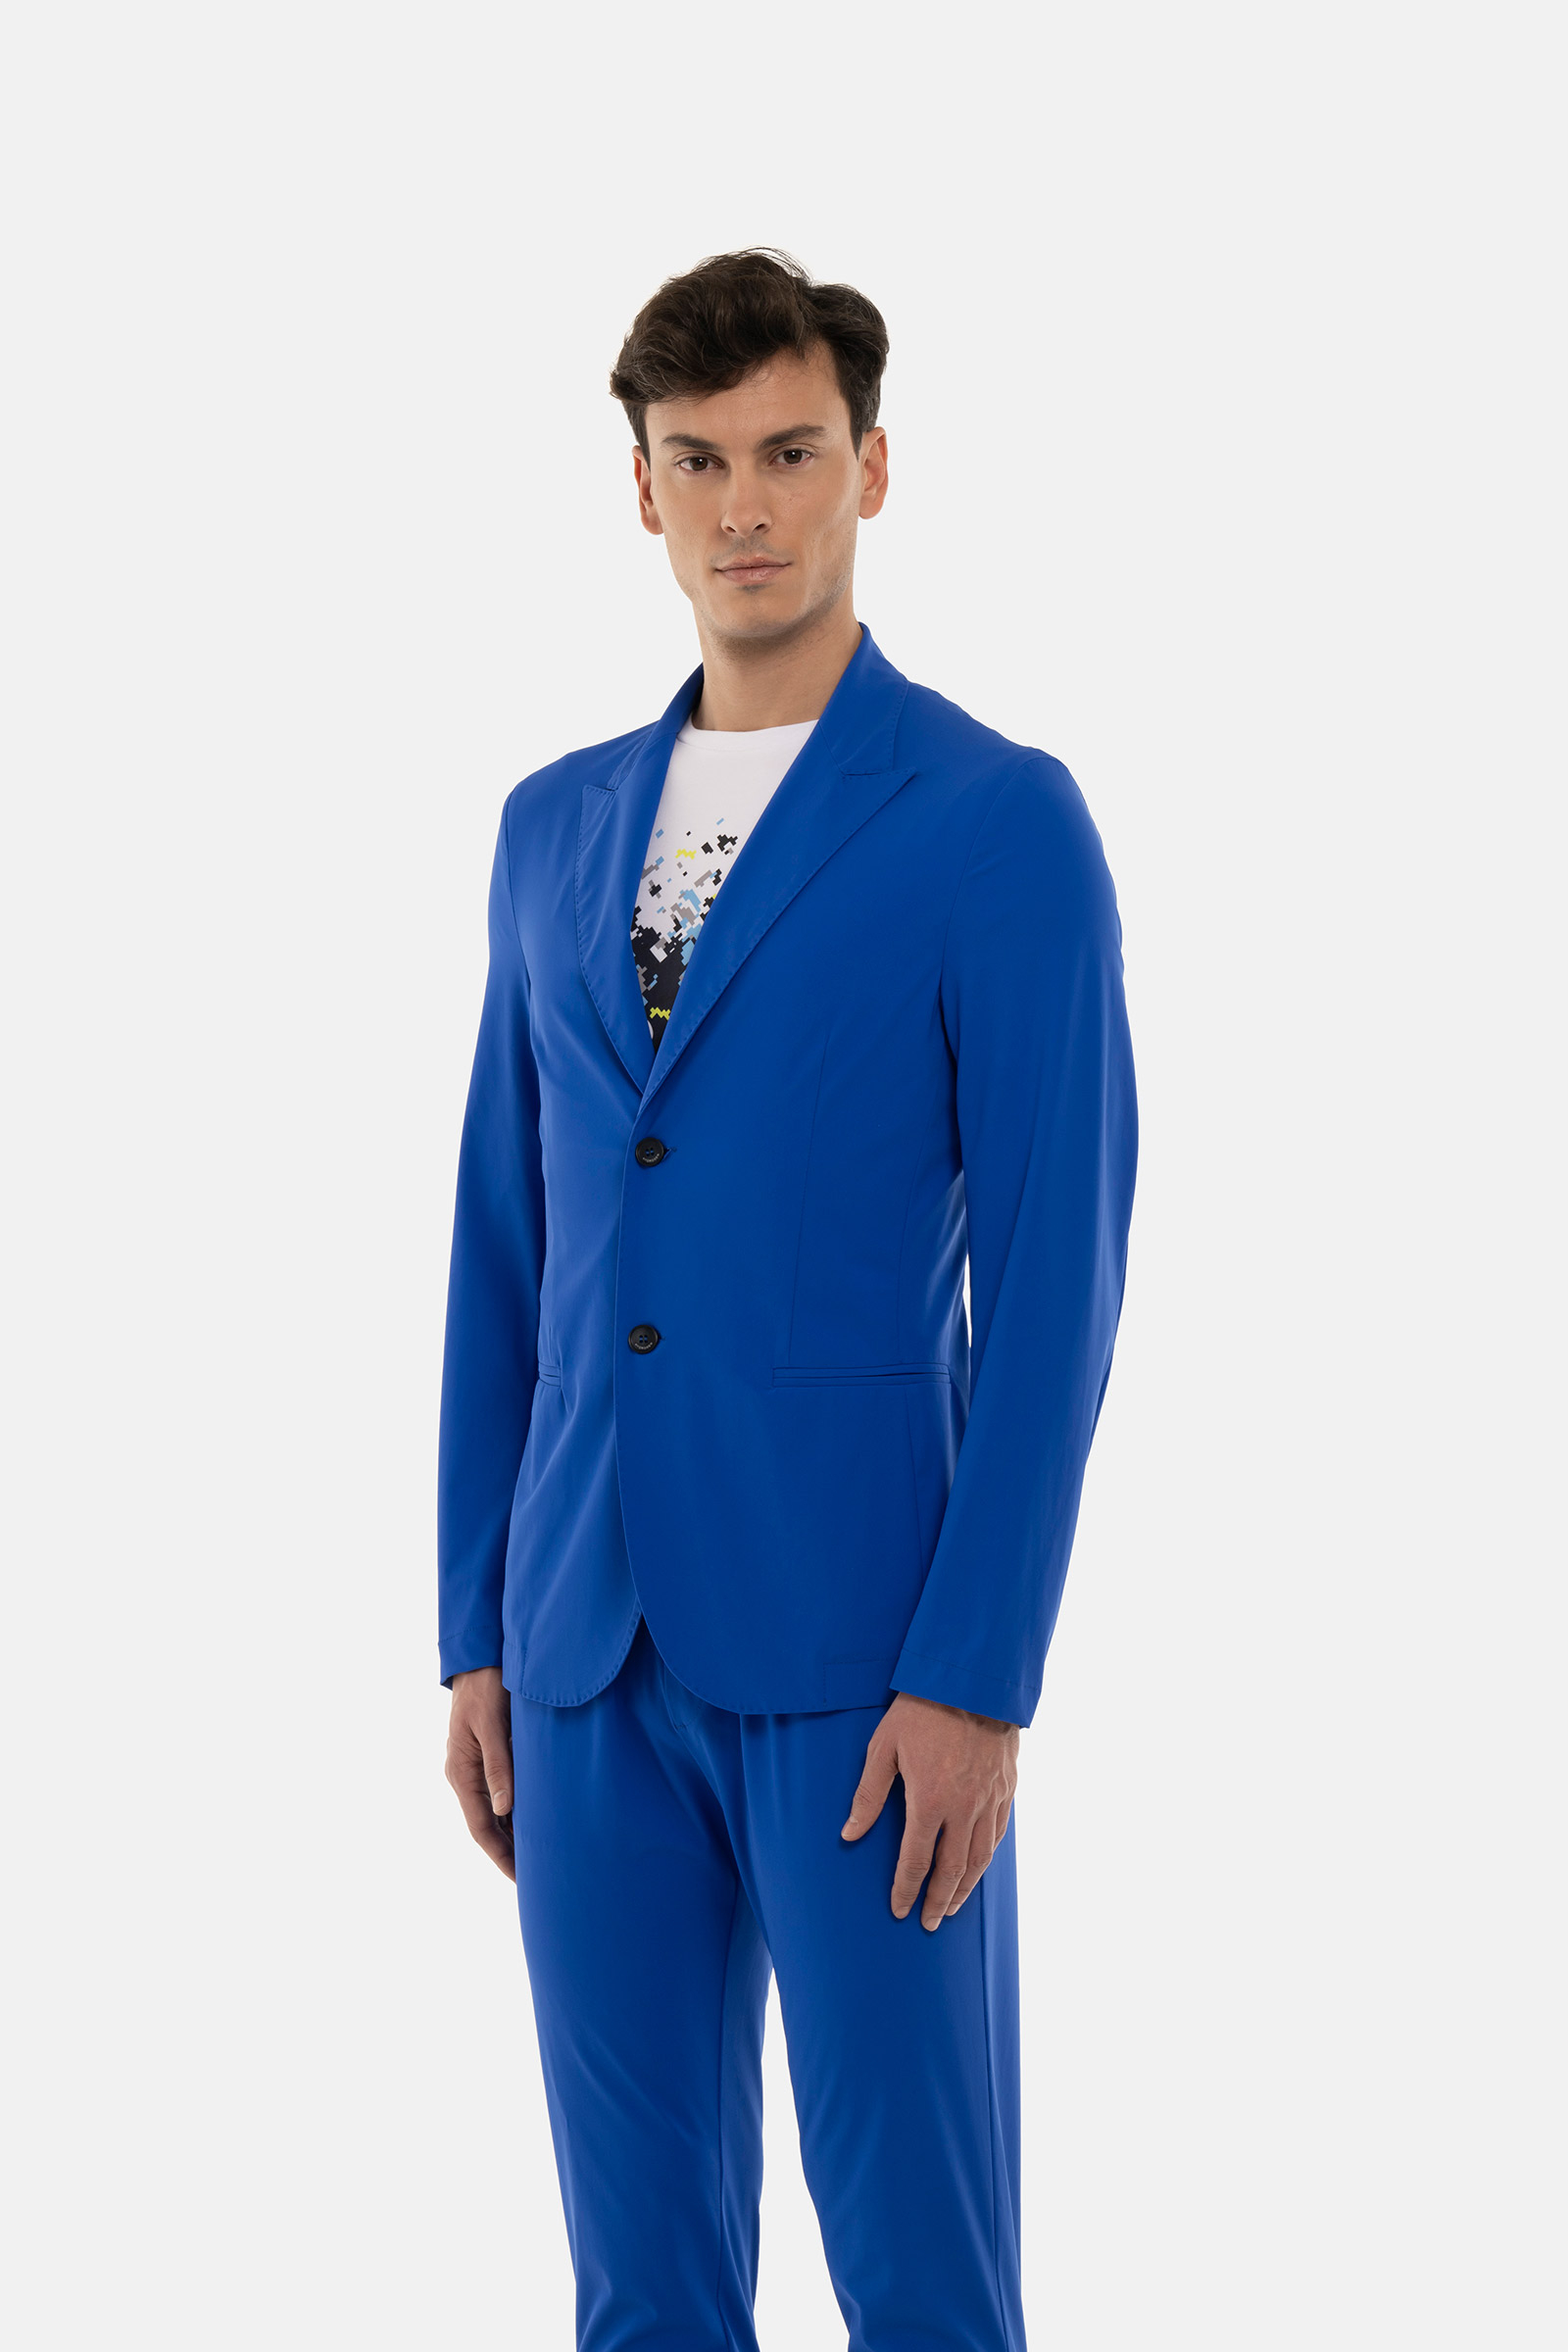 GIACCA CLASSICA - BLUE - Abbigliamento sportivo | Hydrogen